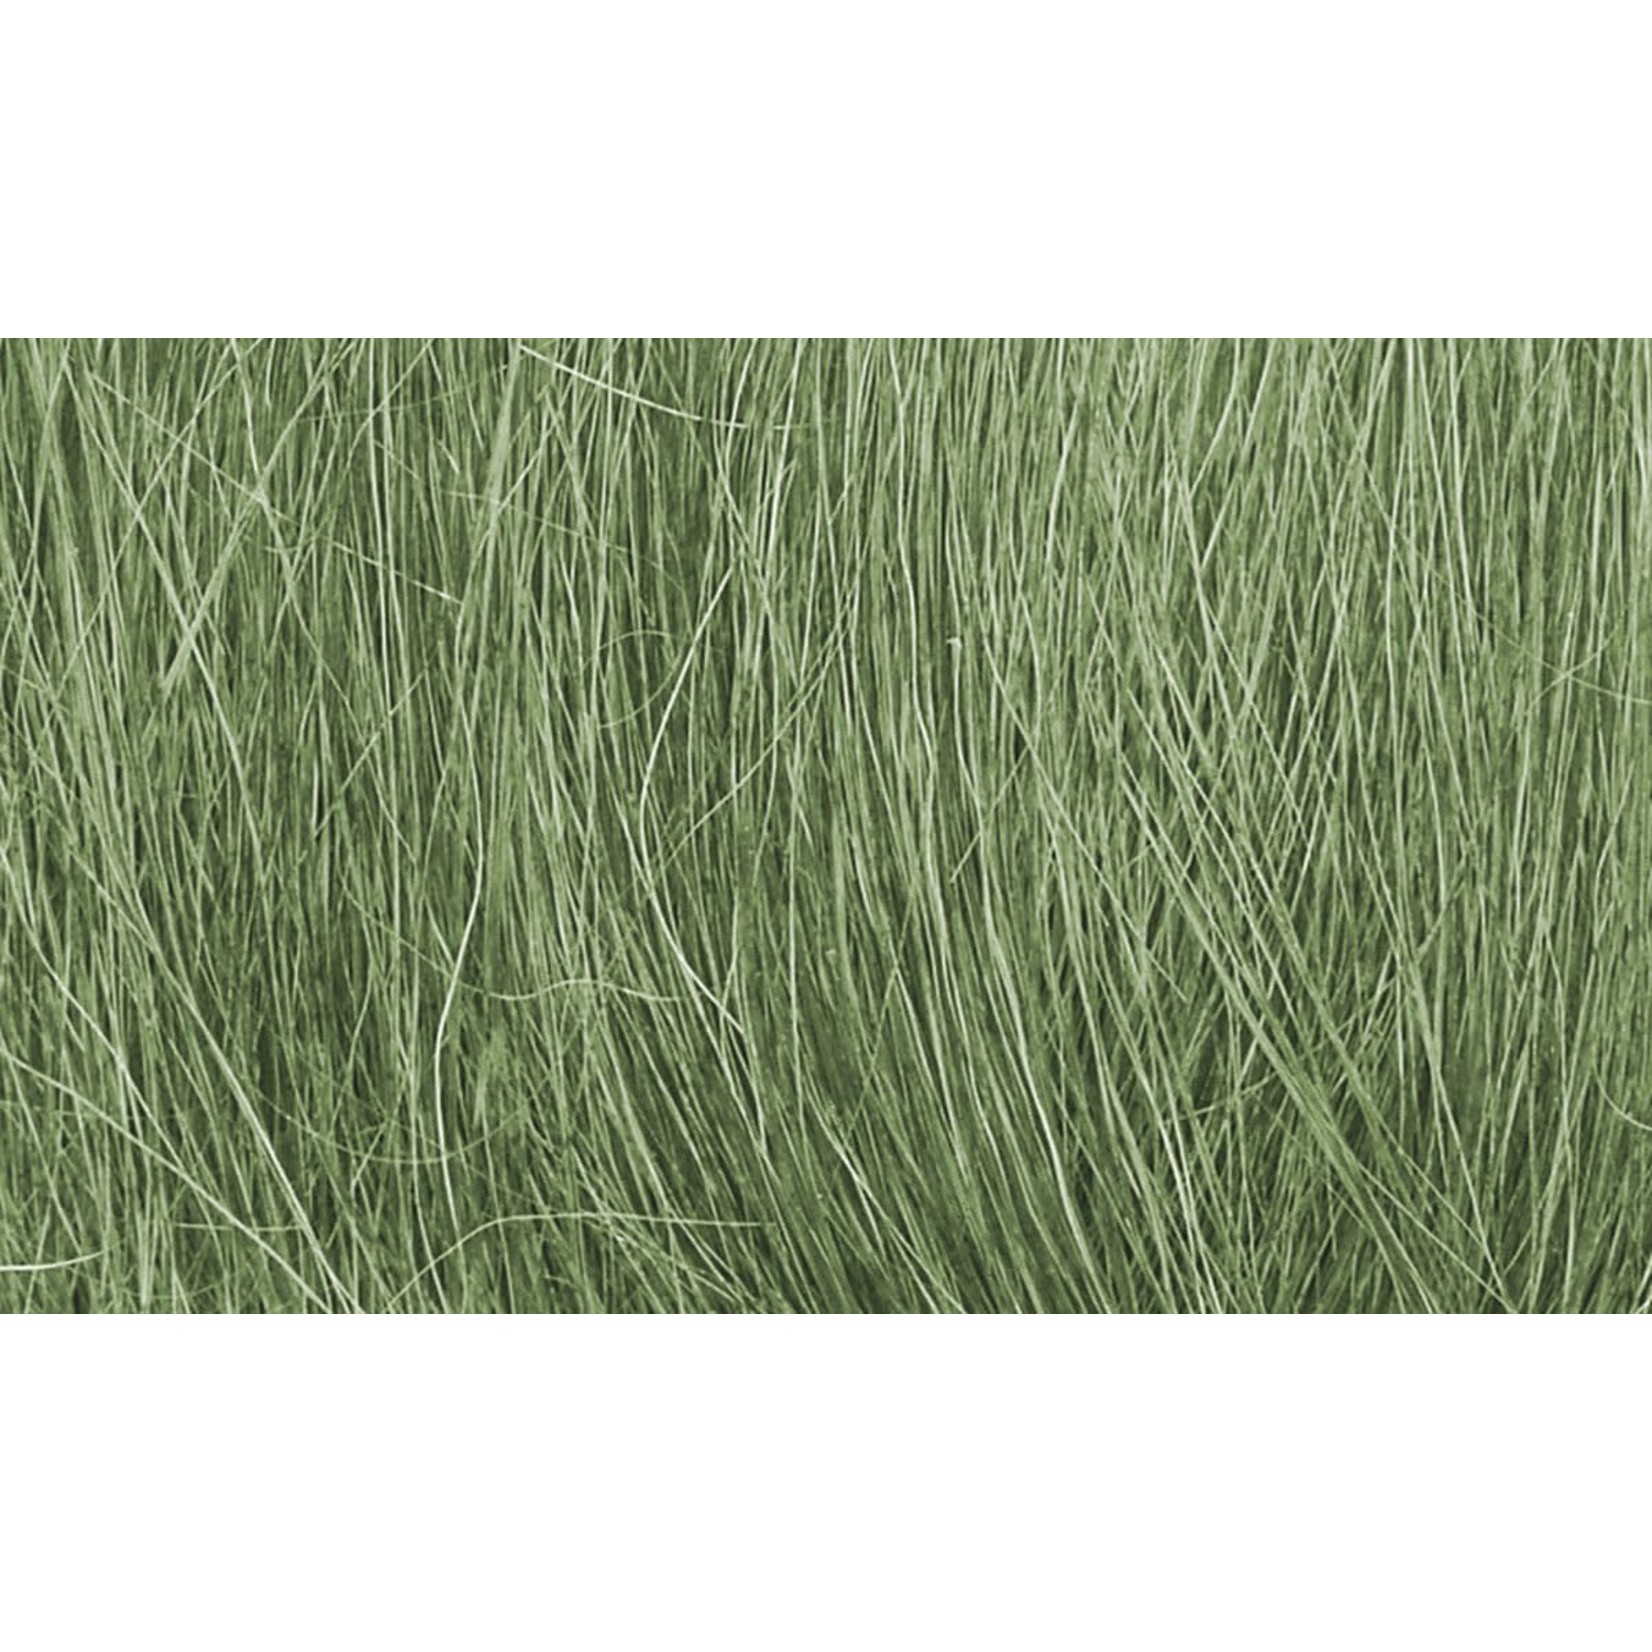 Woodland Scenics WOO174 Field Grass Medium Green